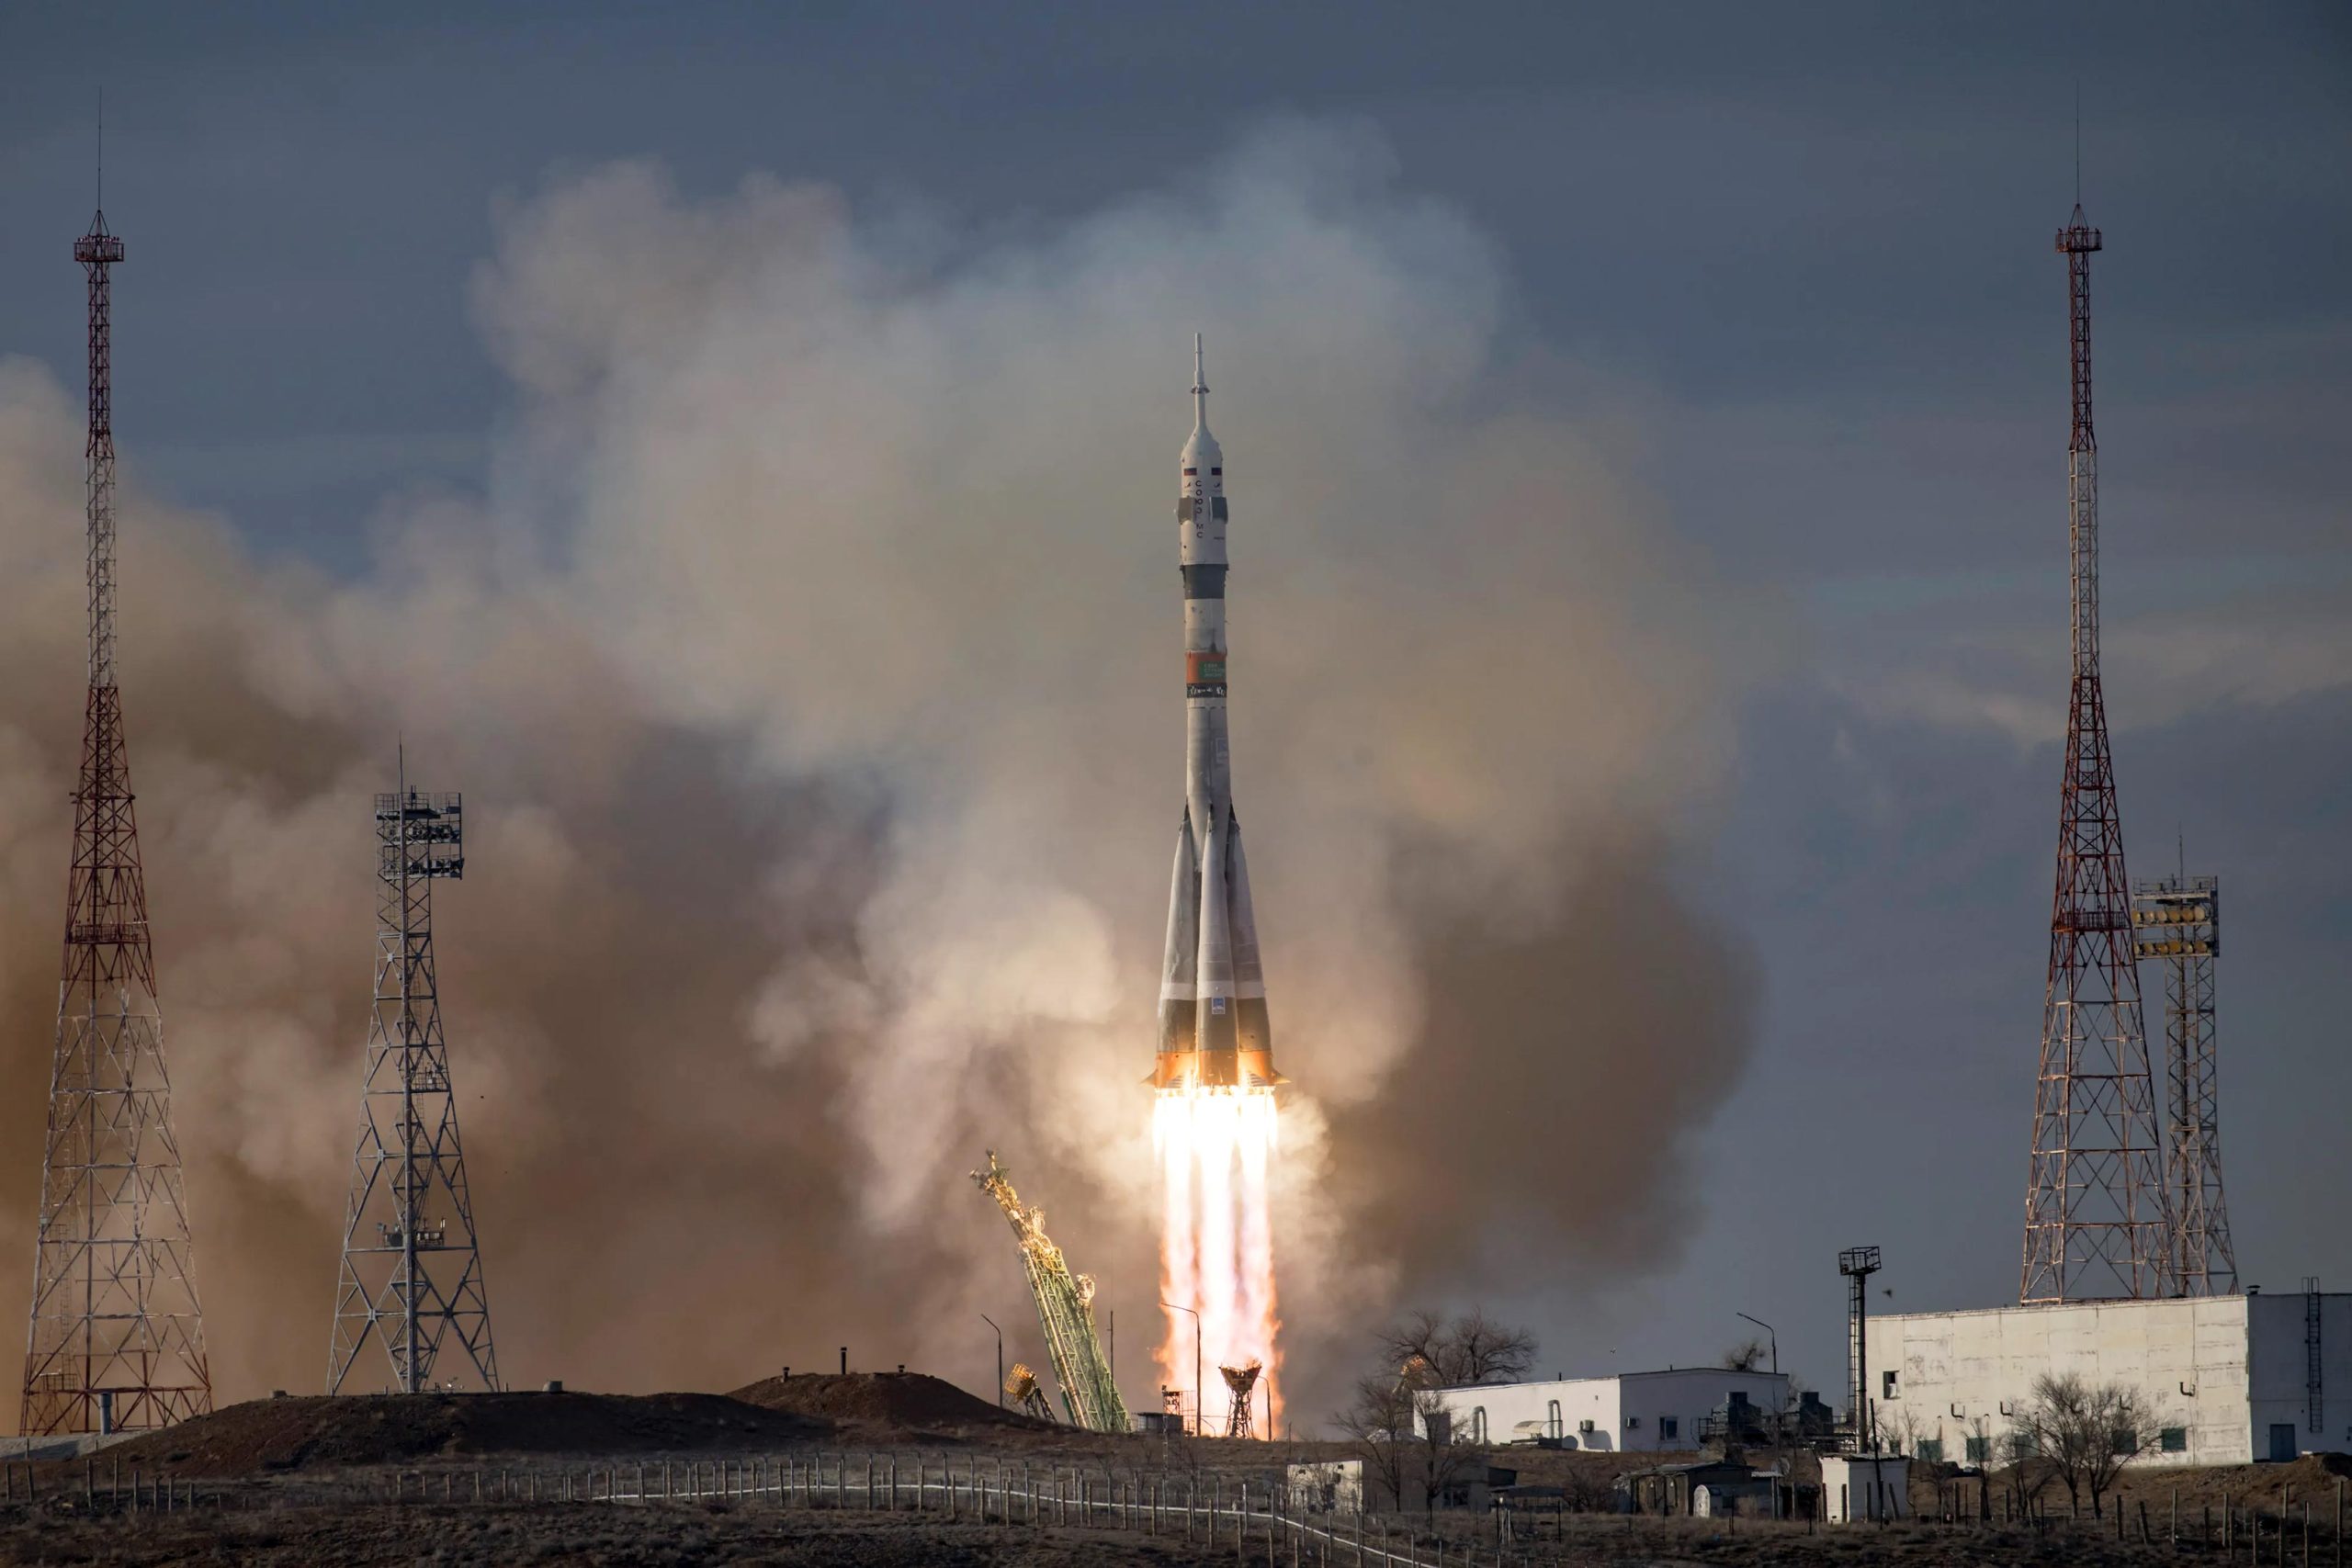 ロシアのロケット、故障から数日後、宇宙飛行士、宇宙飛行士、客室乗務員を国際宇宙ステーションに送る